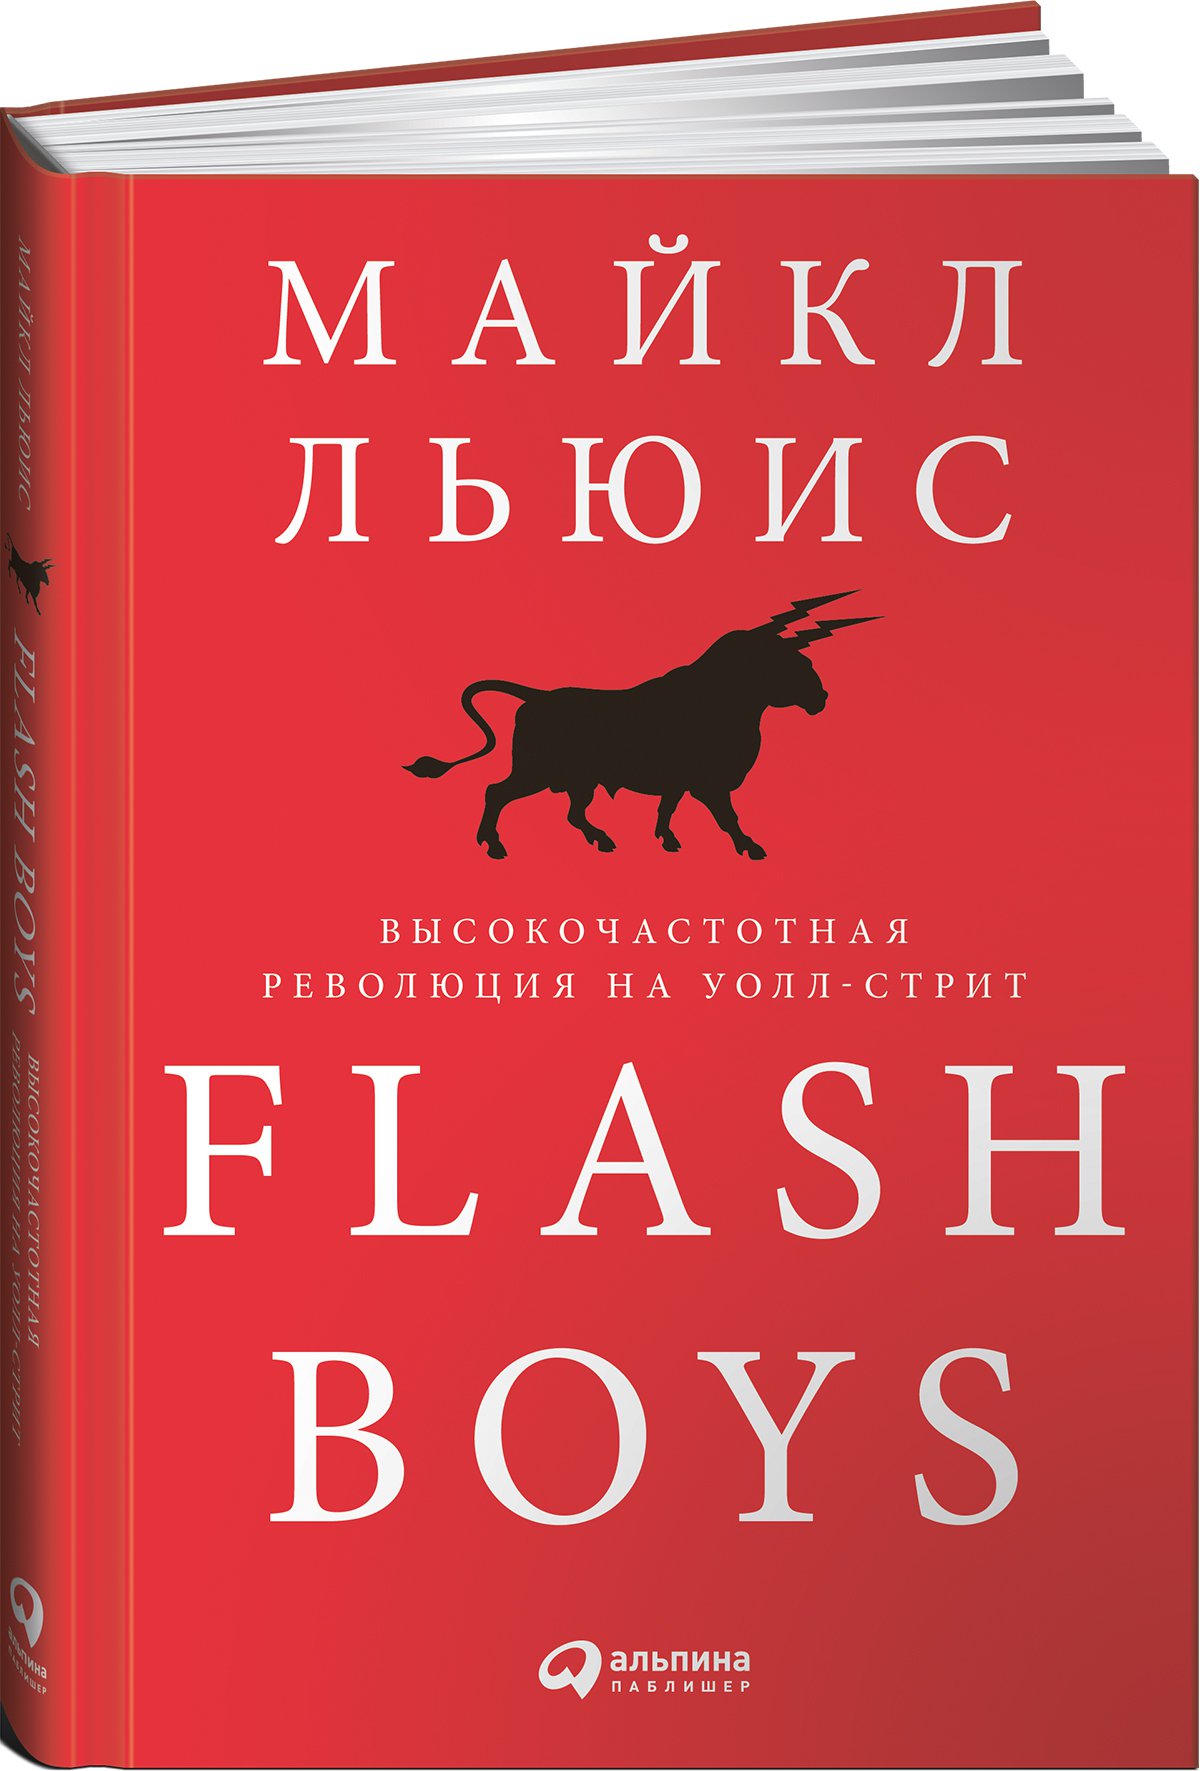 фото Книга flash boys: высокочастотная революция на уолл-стрит интеллектуальная литература